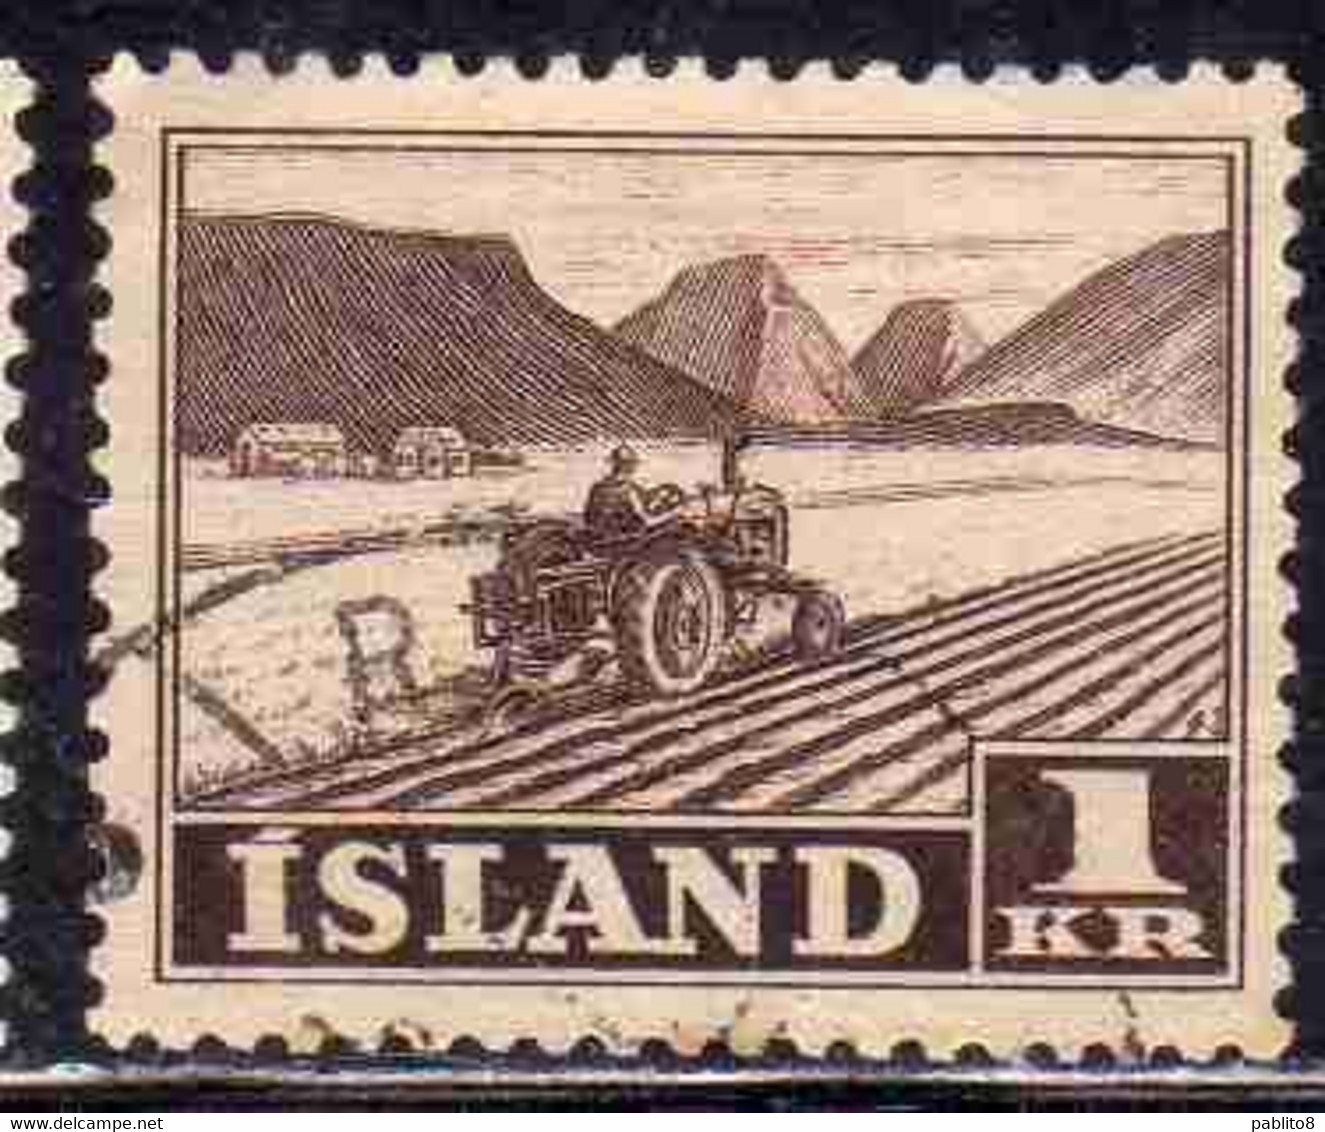 ISLANDA ICELAND ISLANDE 1950 1954 TRACTOR PLOWING 1k USED USATO OBLITERE' - Oblitérés